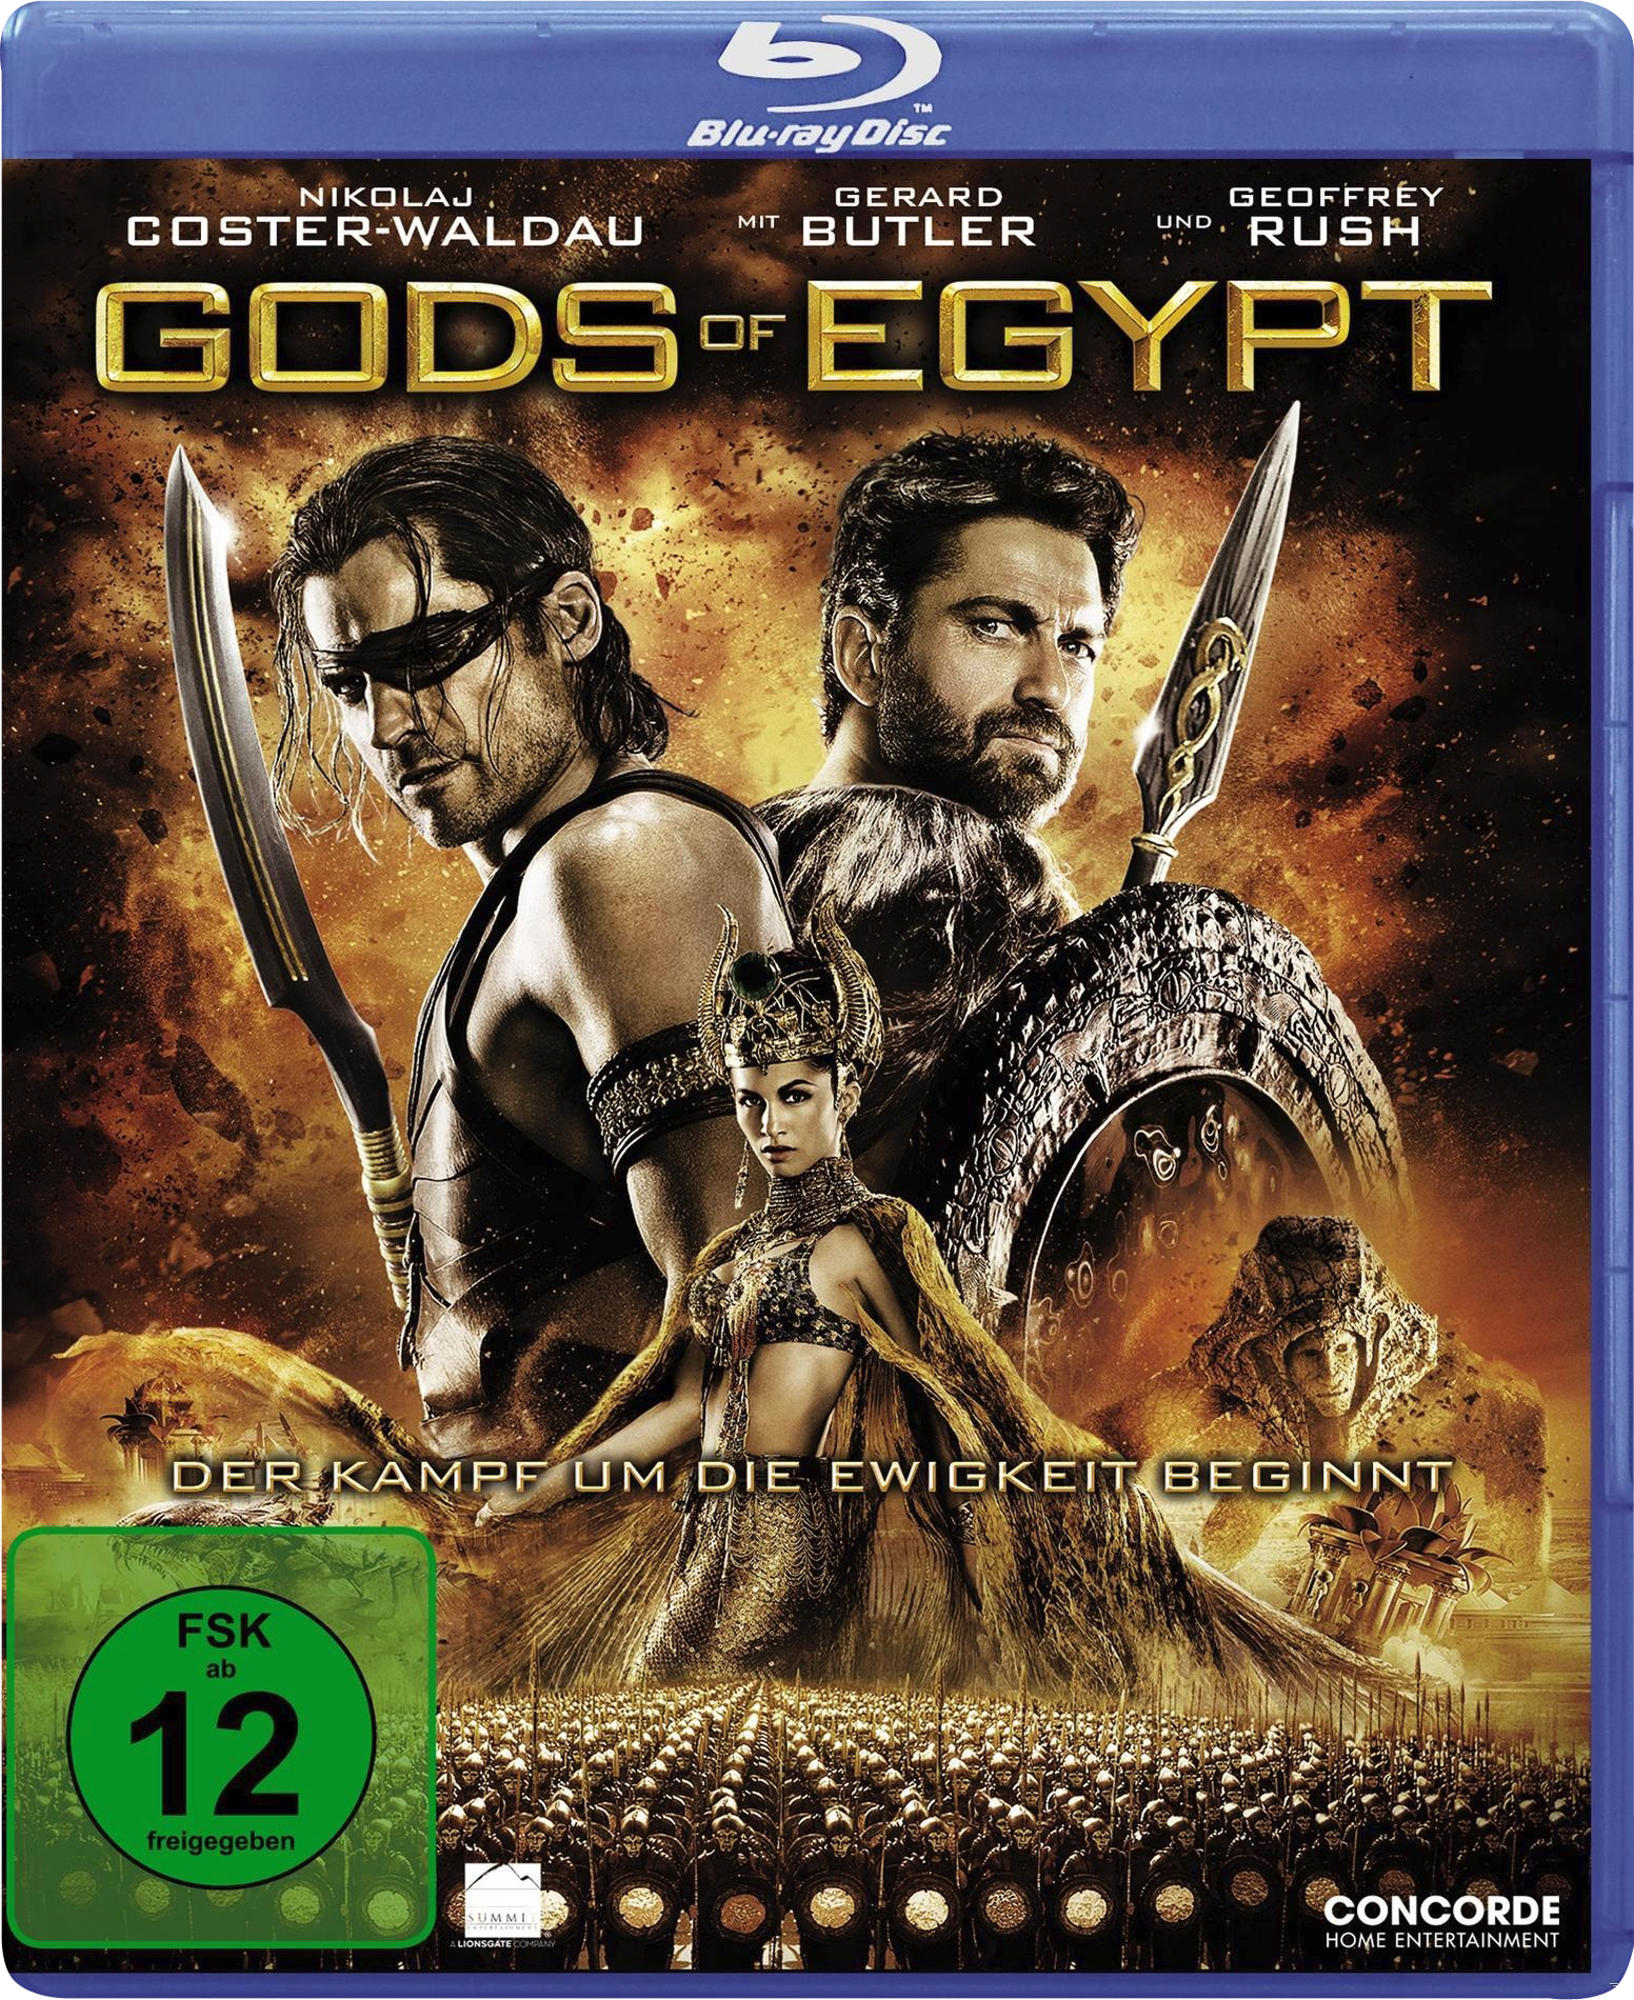 Blu-ray of Gods Egypt